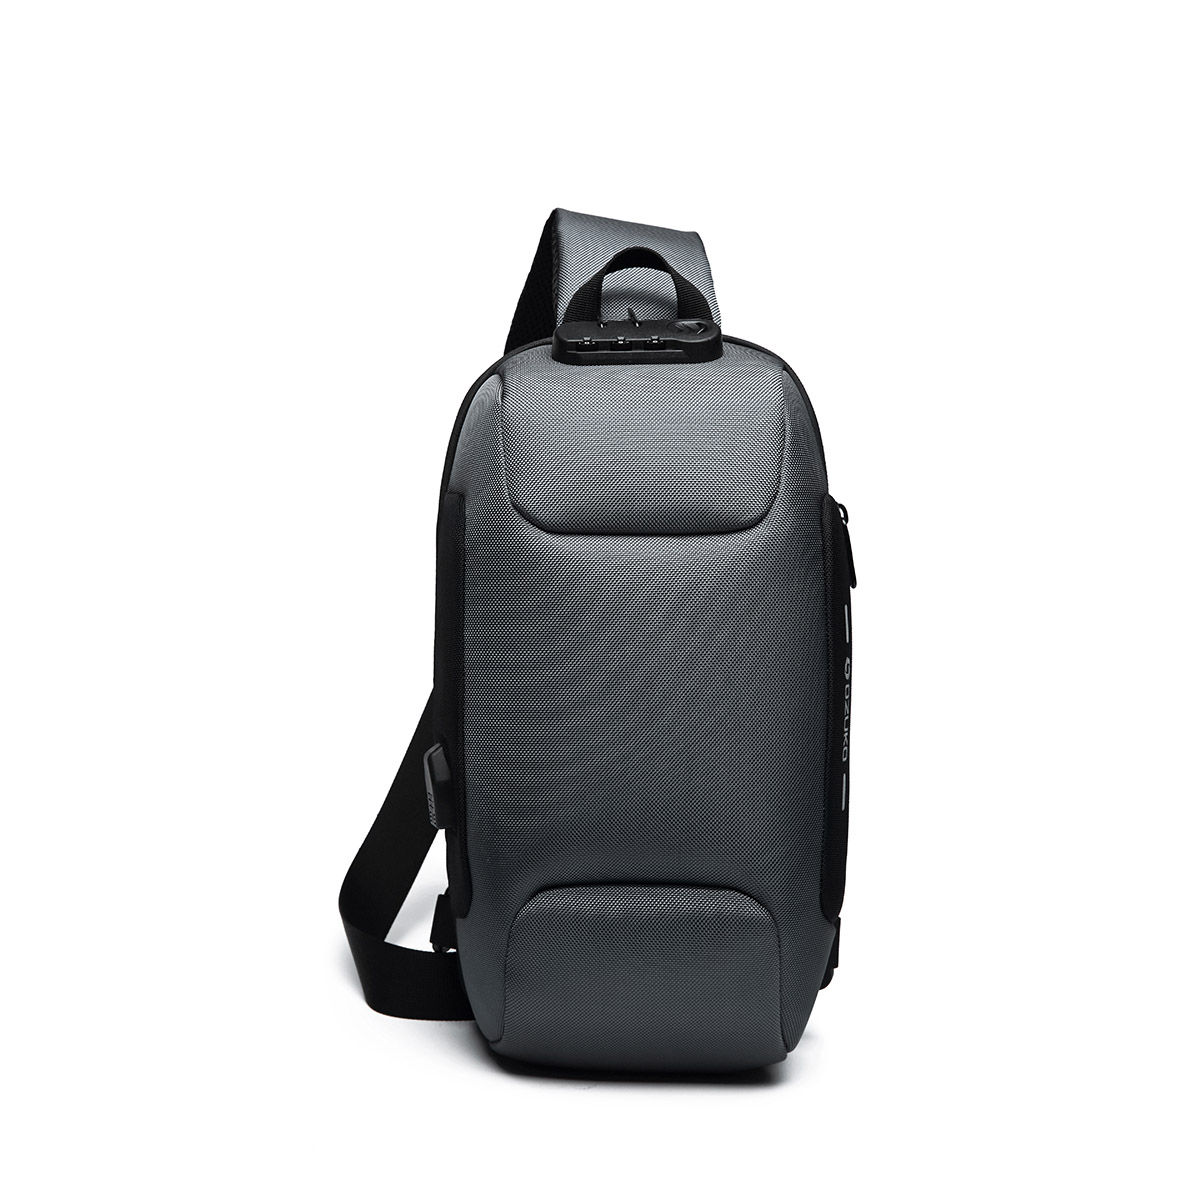 Ozuko 9223 Range Grey Color Soft Case Backpack: Buy Ozuko 9223 Range ...